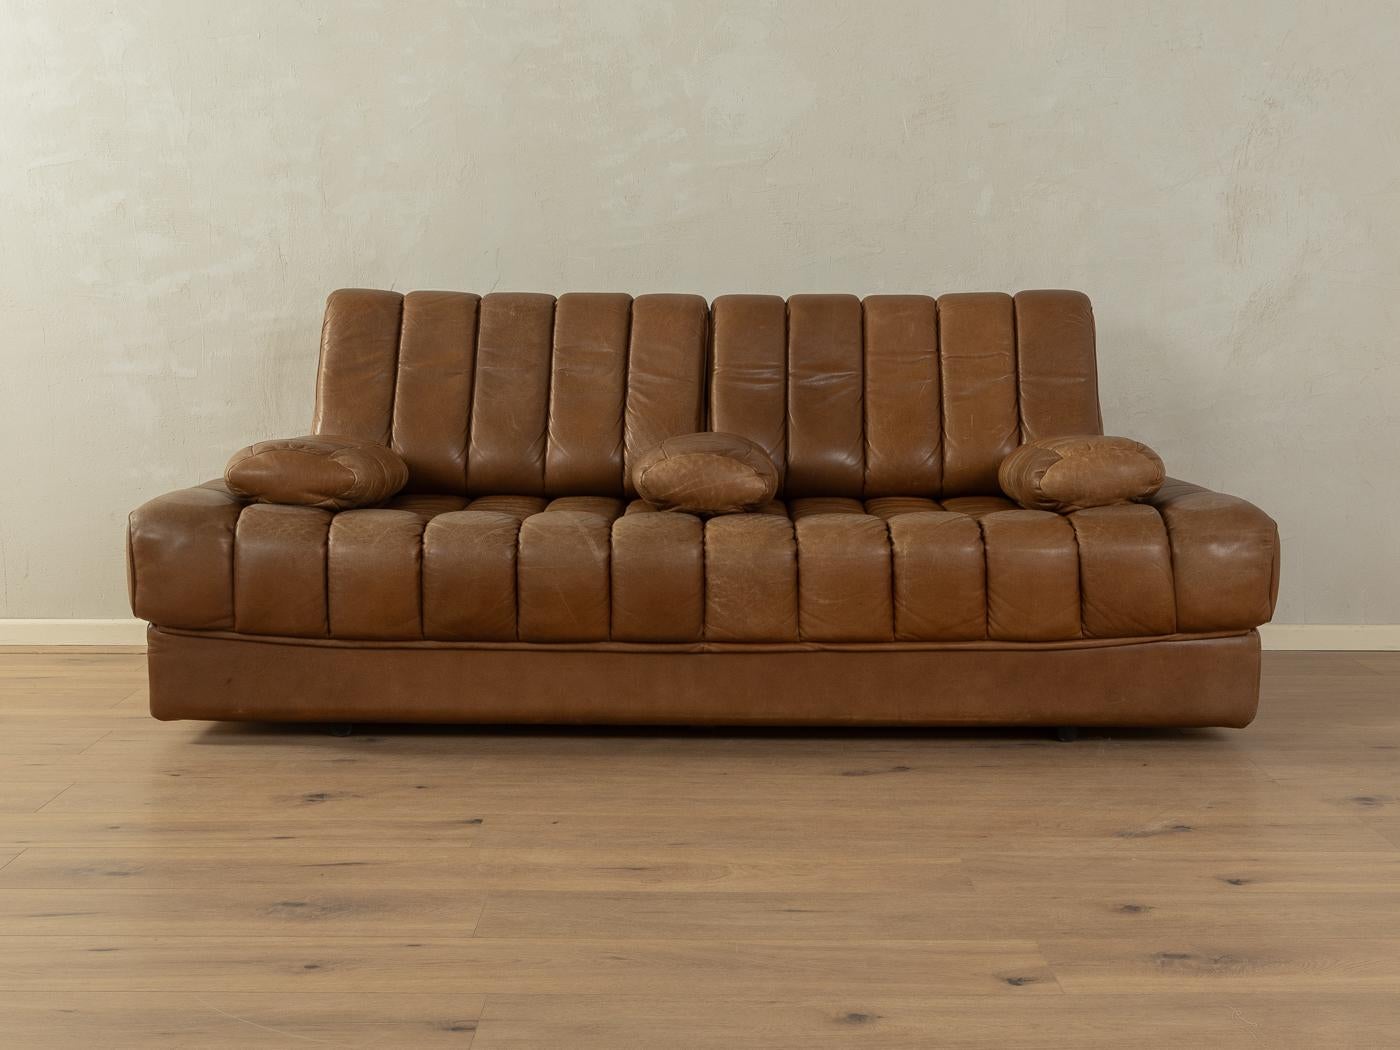  Convertible sofa, de Sede, DS-85  4